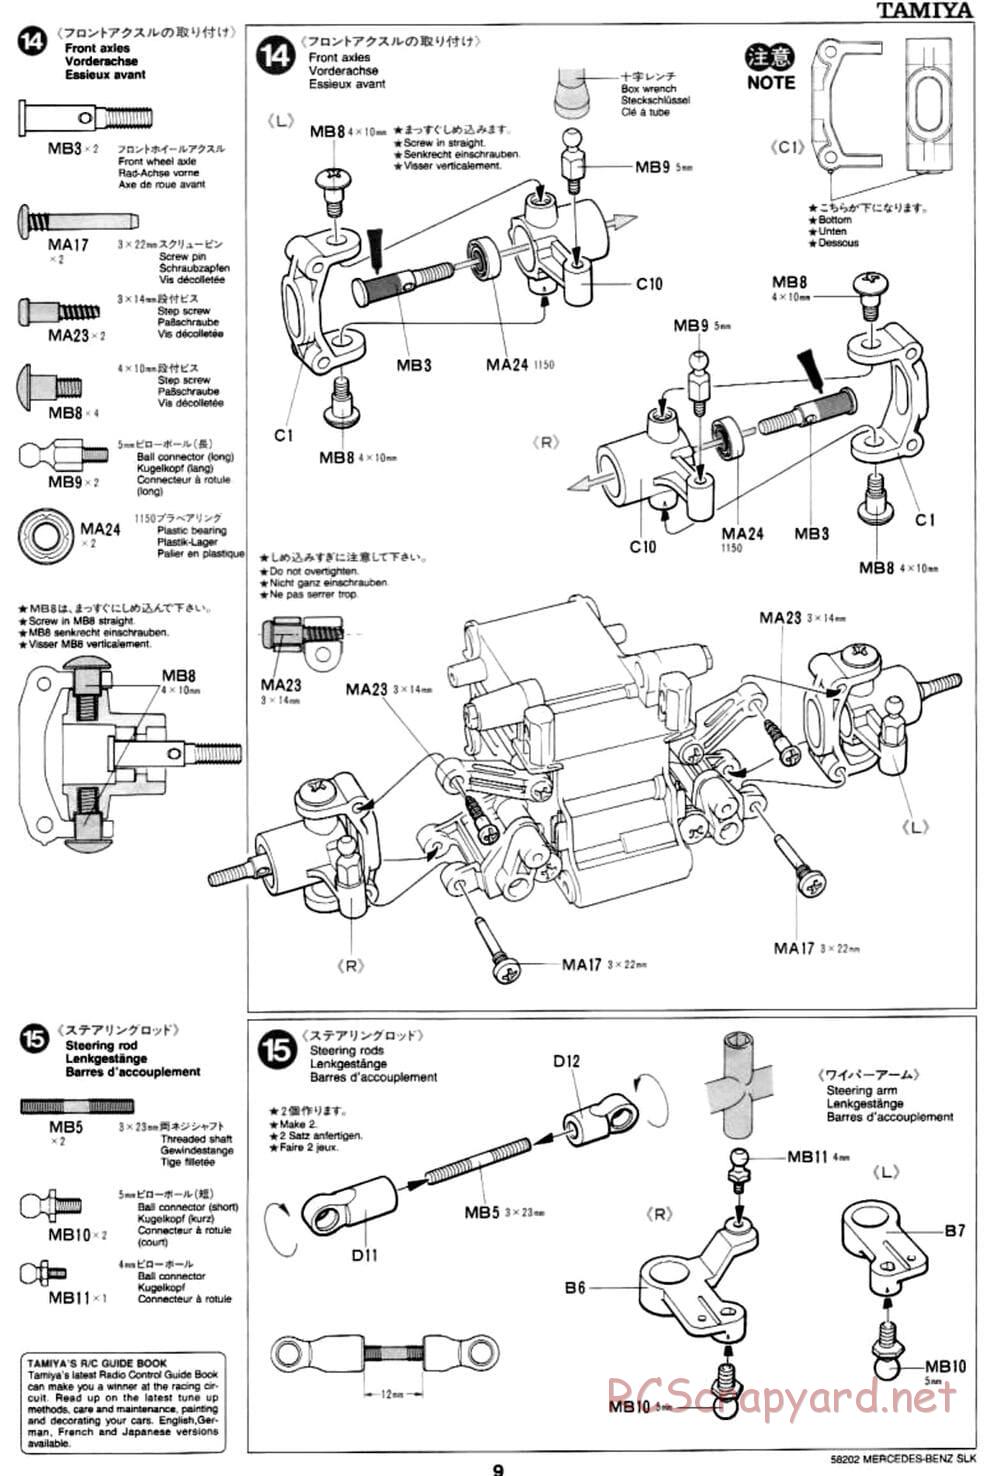 Tamiya - Mercedes-Benz SLK - M02L Chassis - Manual - Page 9